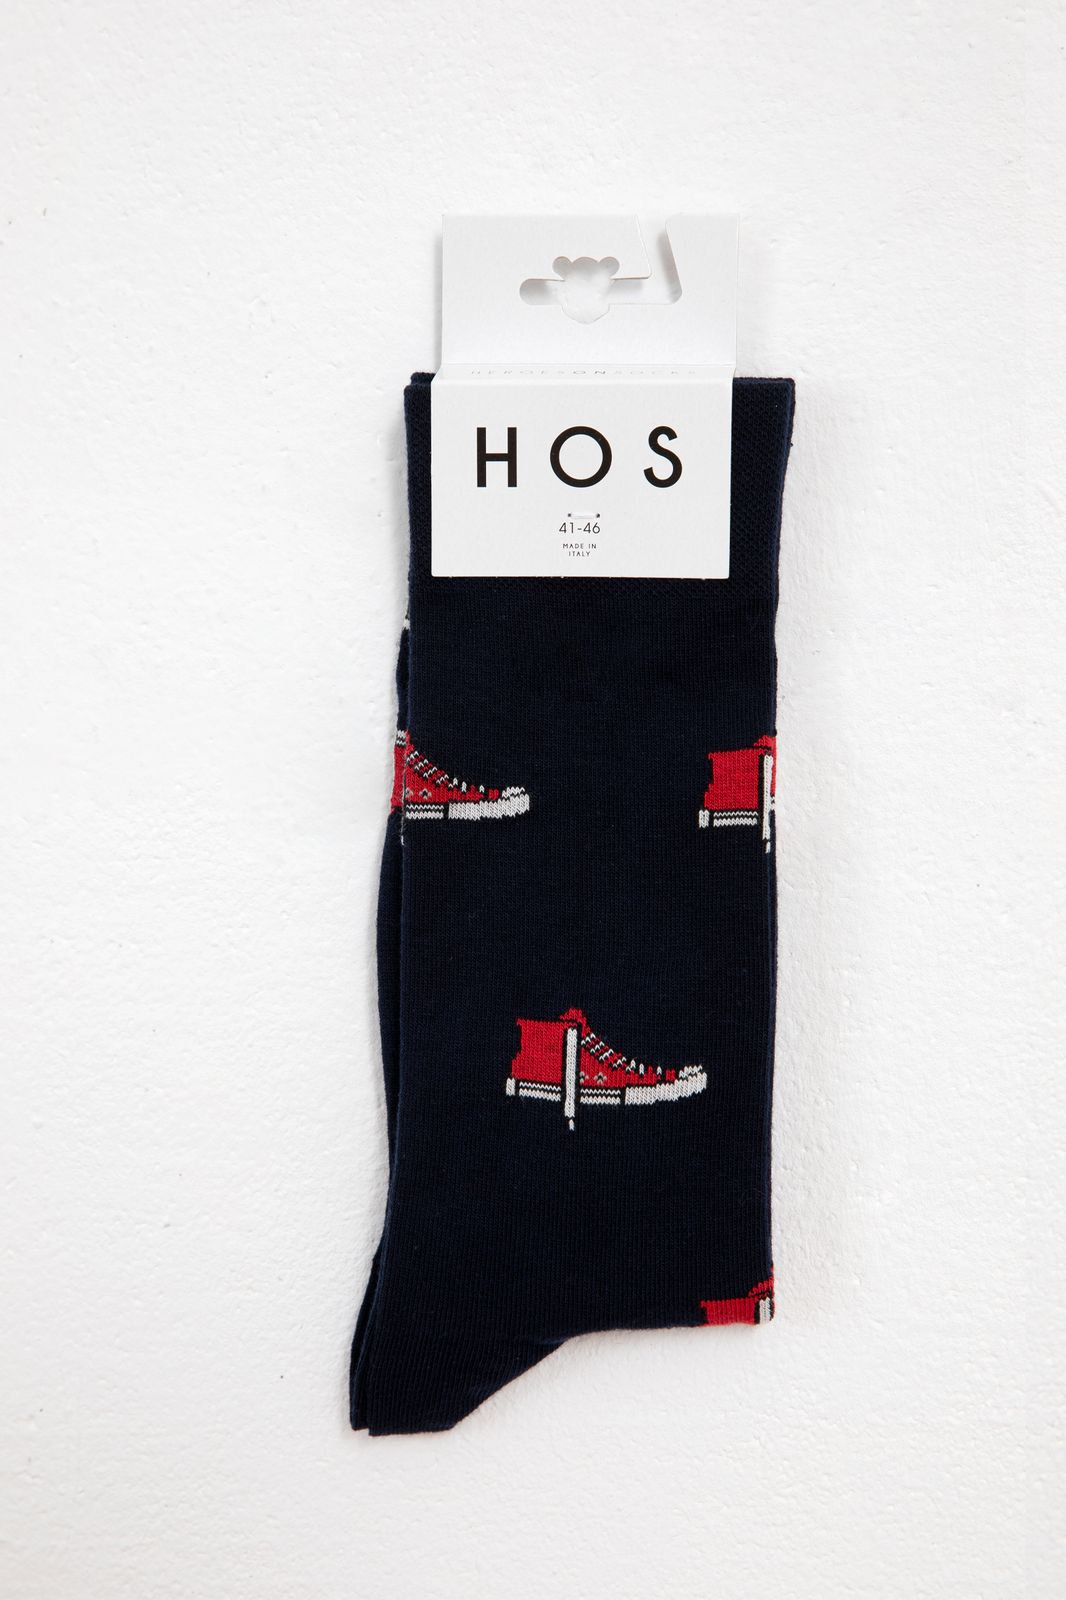 diep spoor elegant Heroes On Socks donkerblauwe sokken sneakers